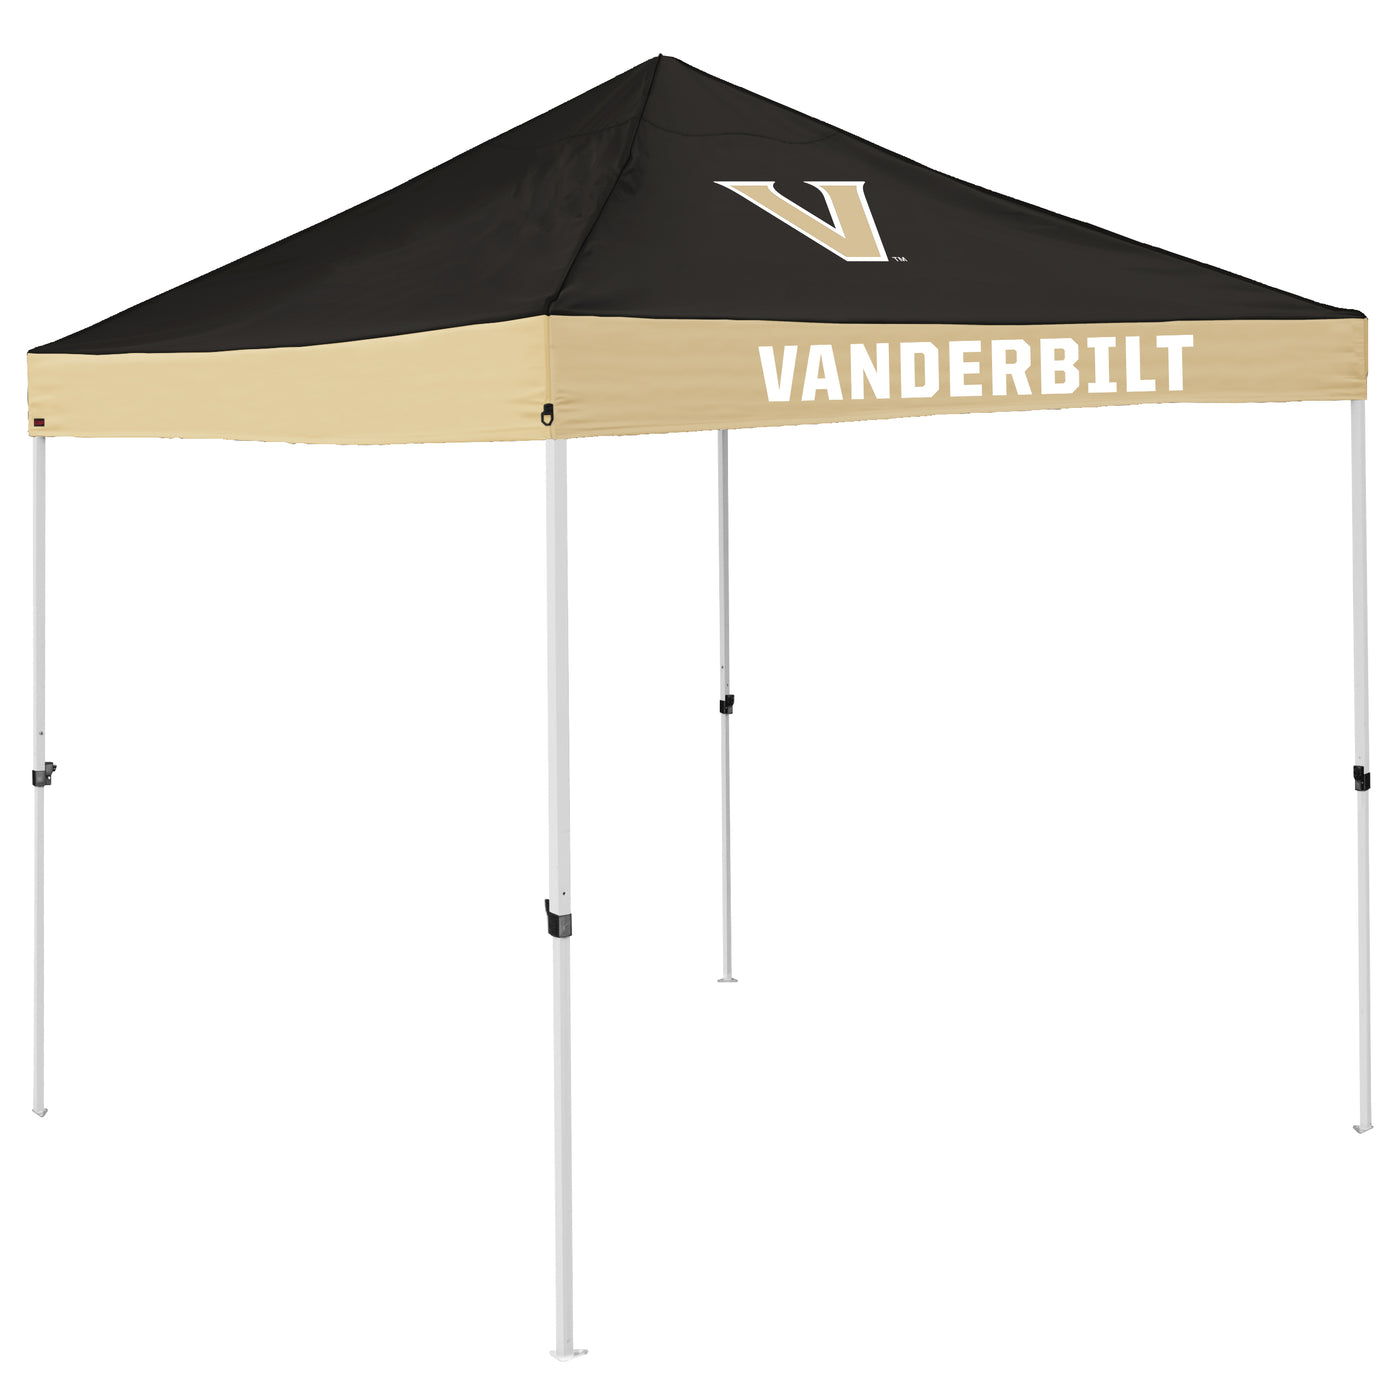 Vanderbilt Economy Canopy